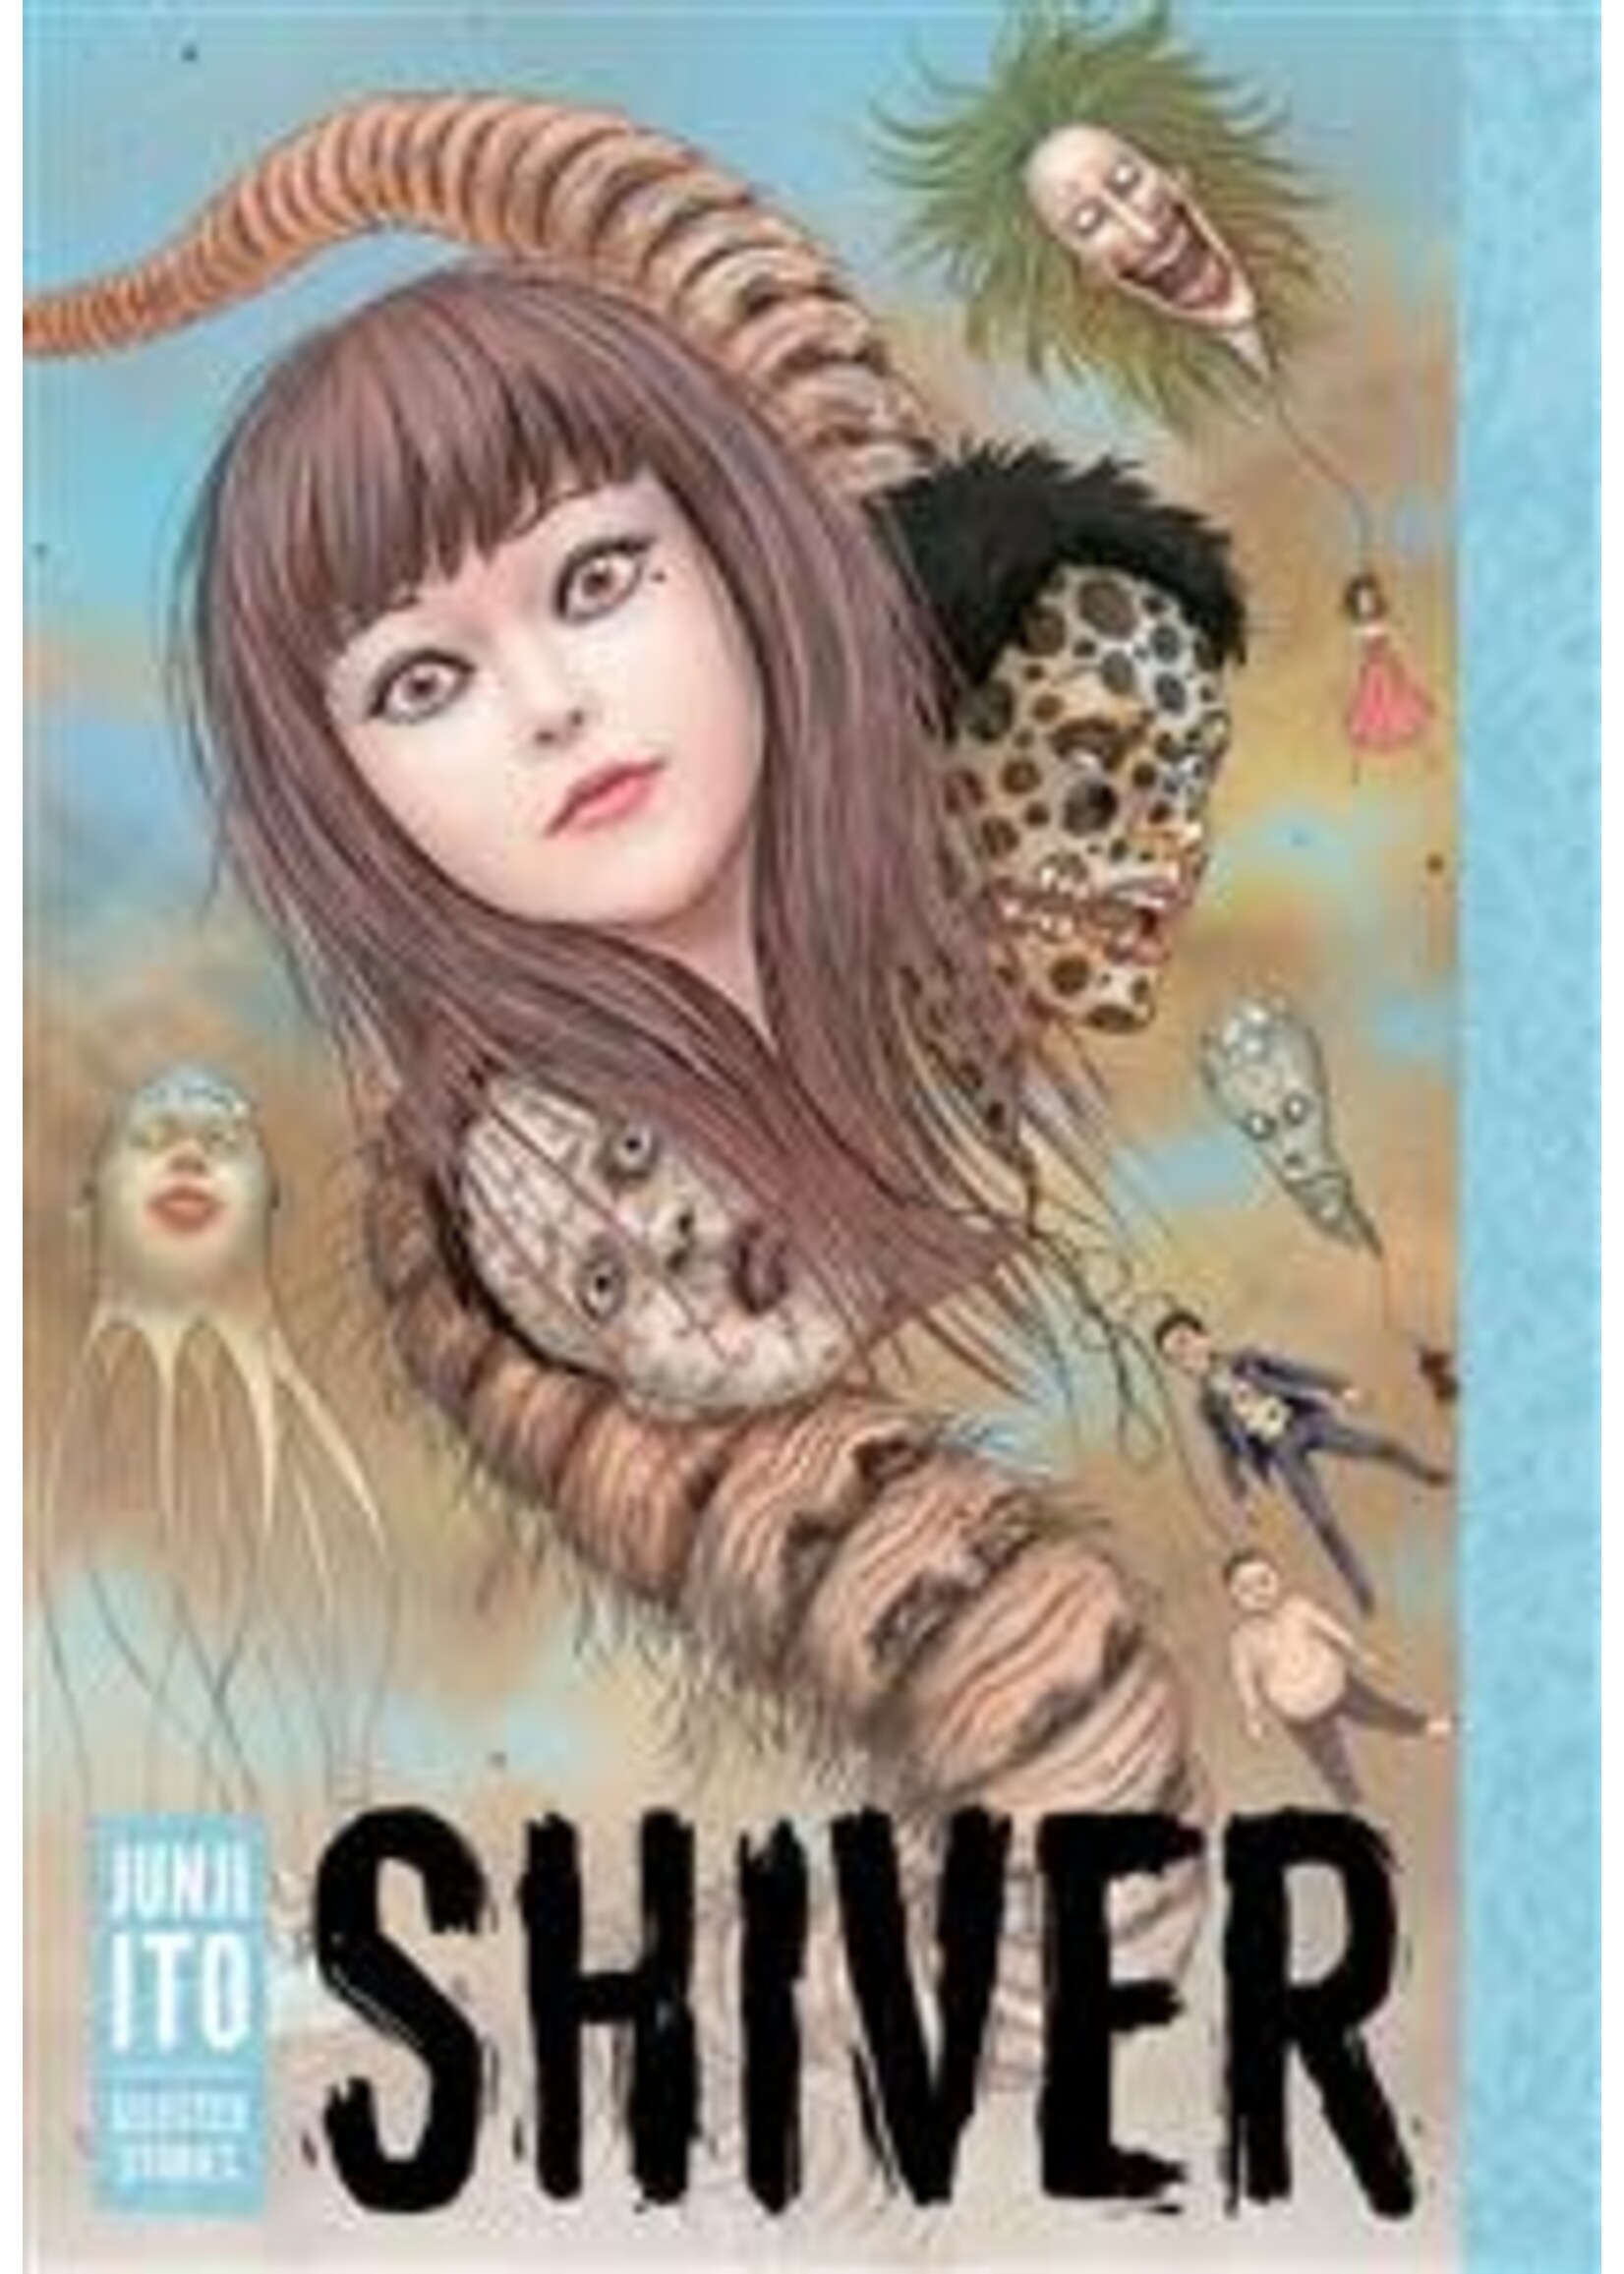 Shiver: Junji Ito Selected Stories by Junji Ito